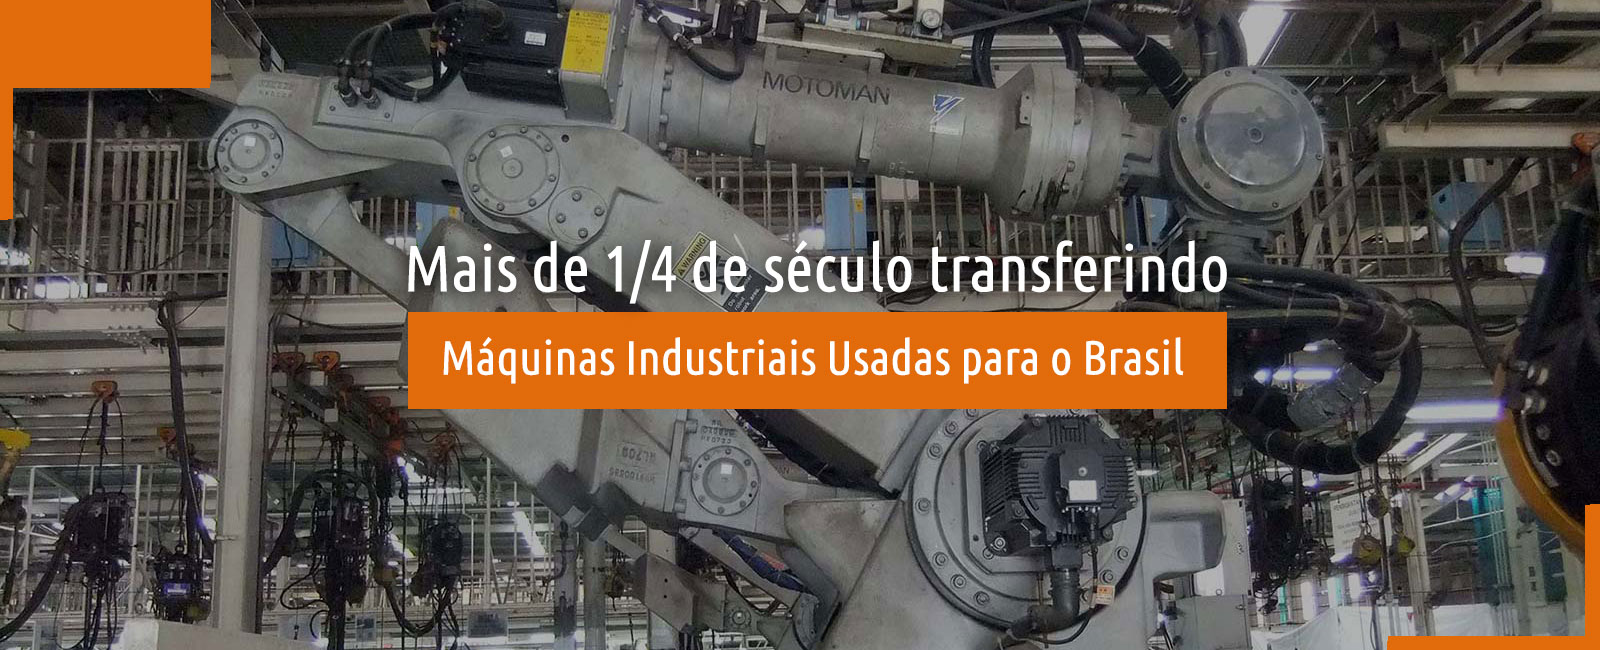 Importação de Máquinas usadas para o Brasil